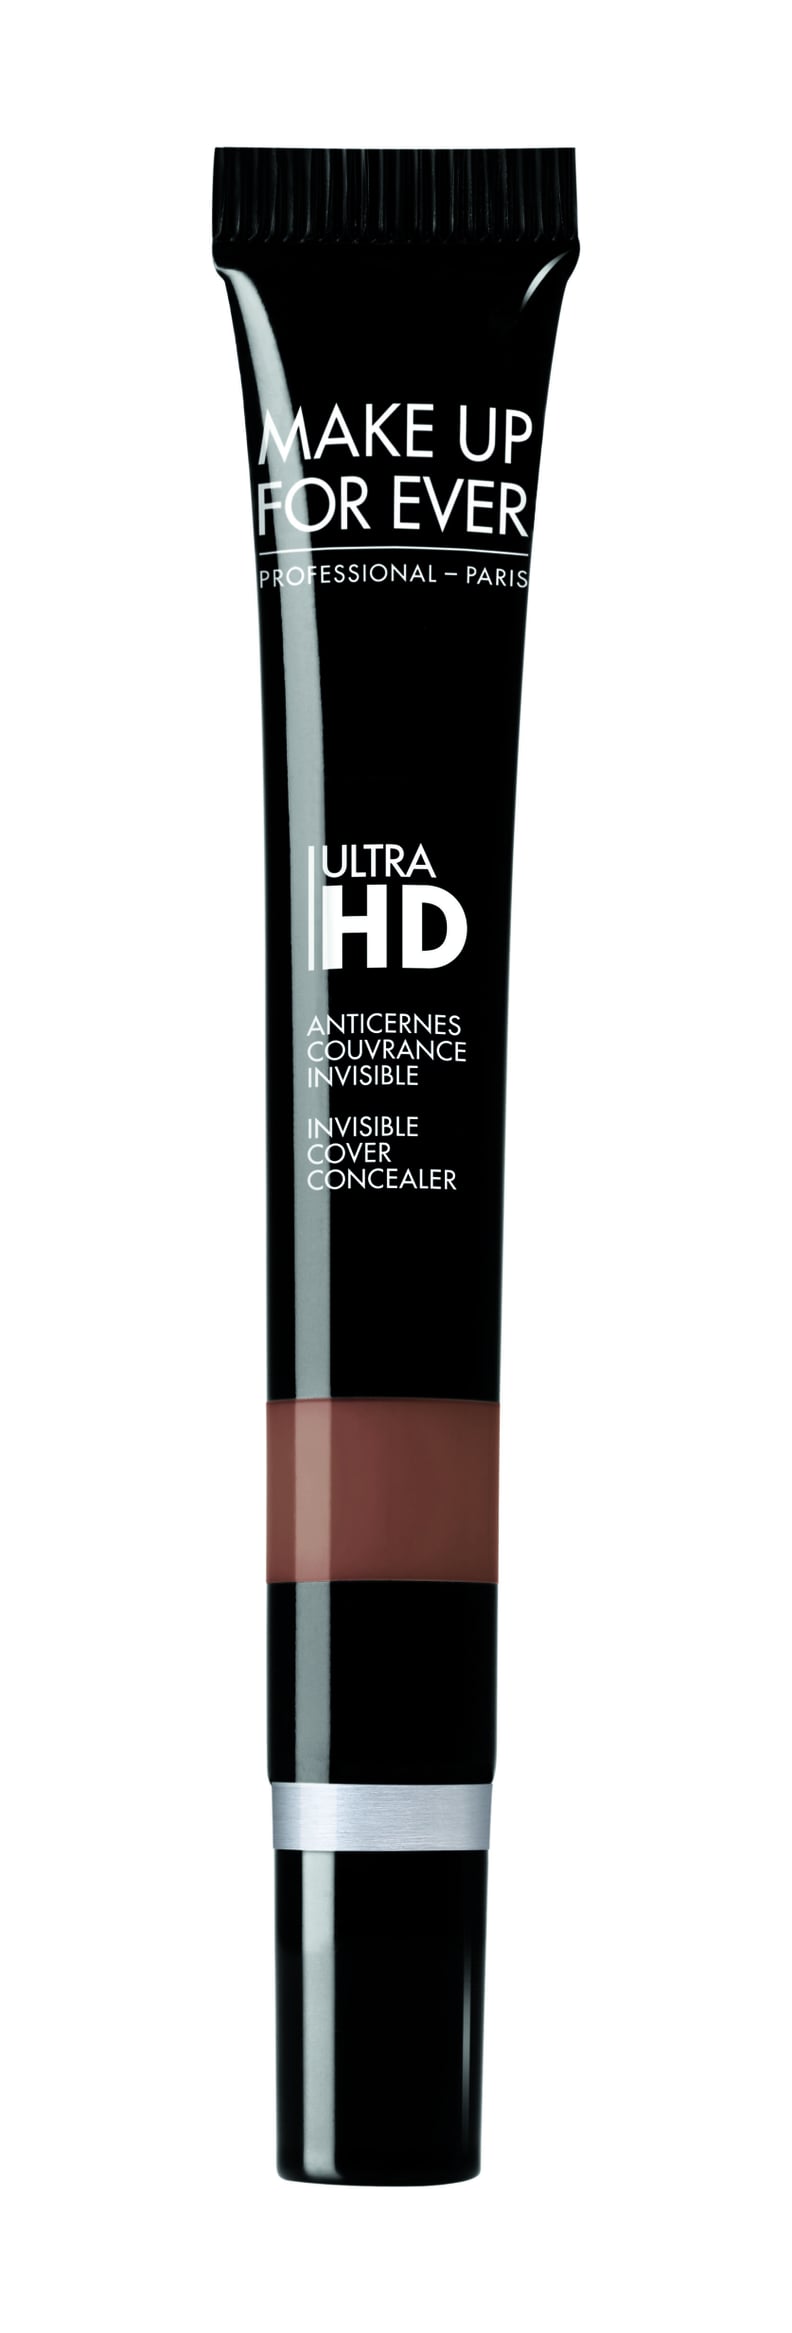 Make Up For Ever Ultra HD Concealer